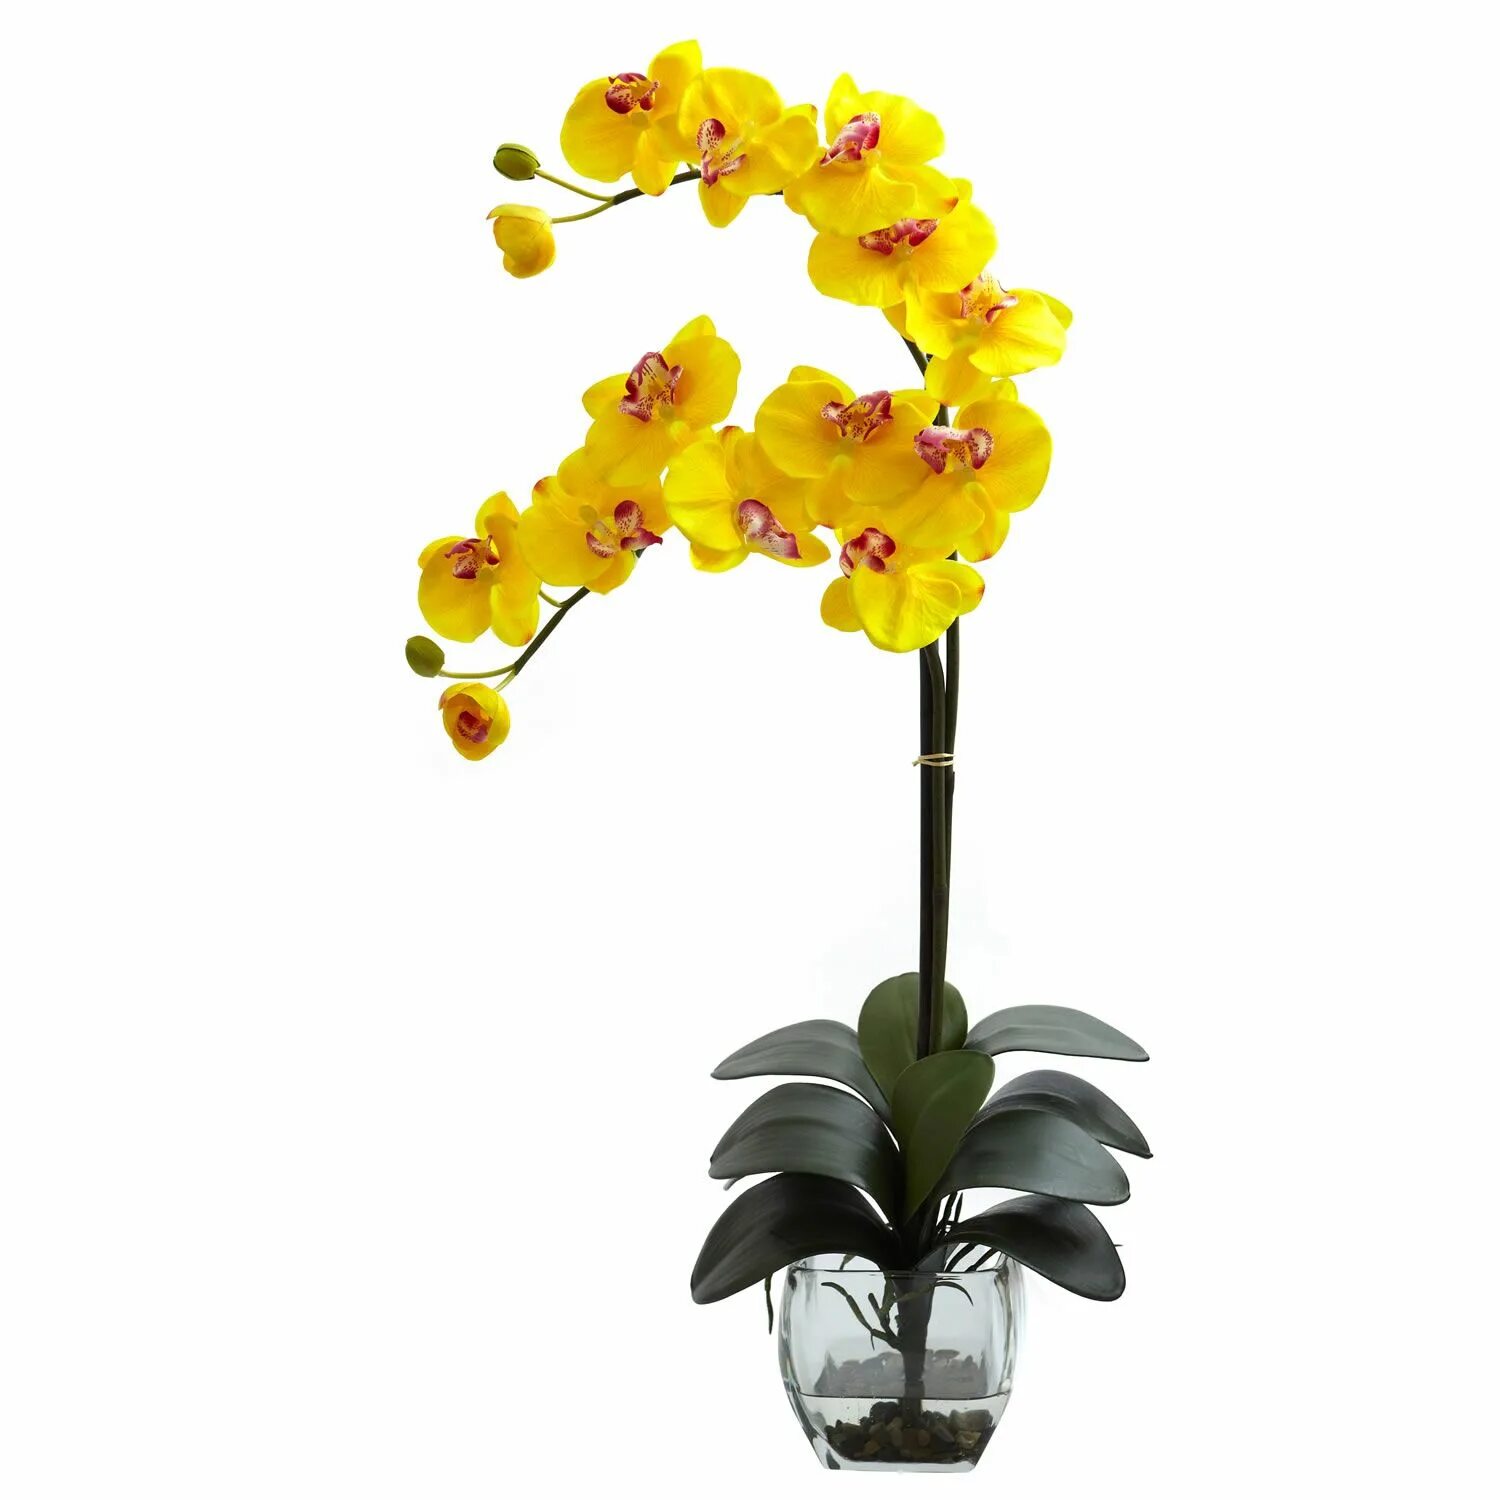 Купить желтую орхидею в горшке